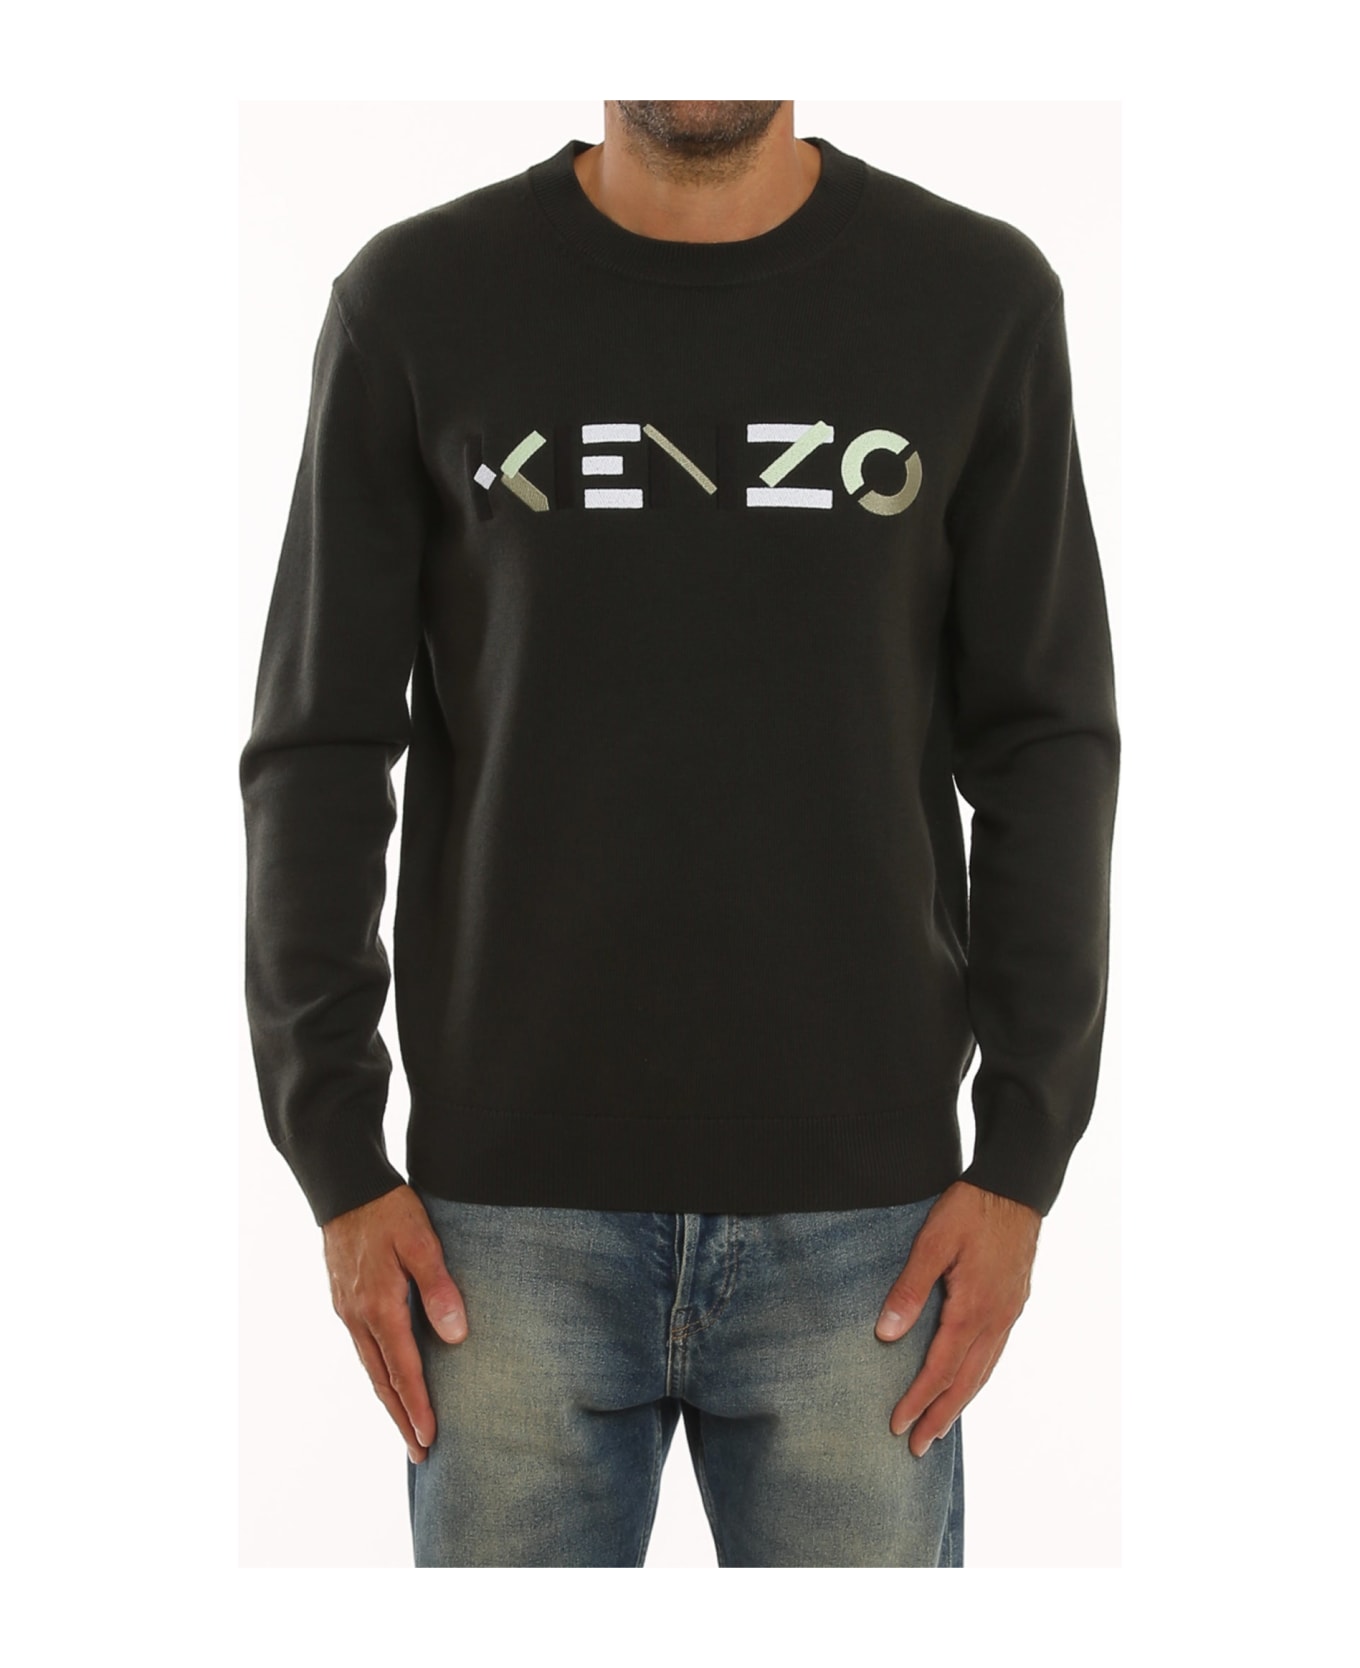 Kenzo Wool Sweater - Green